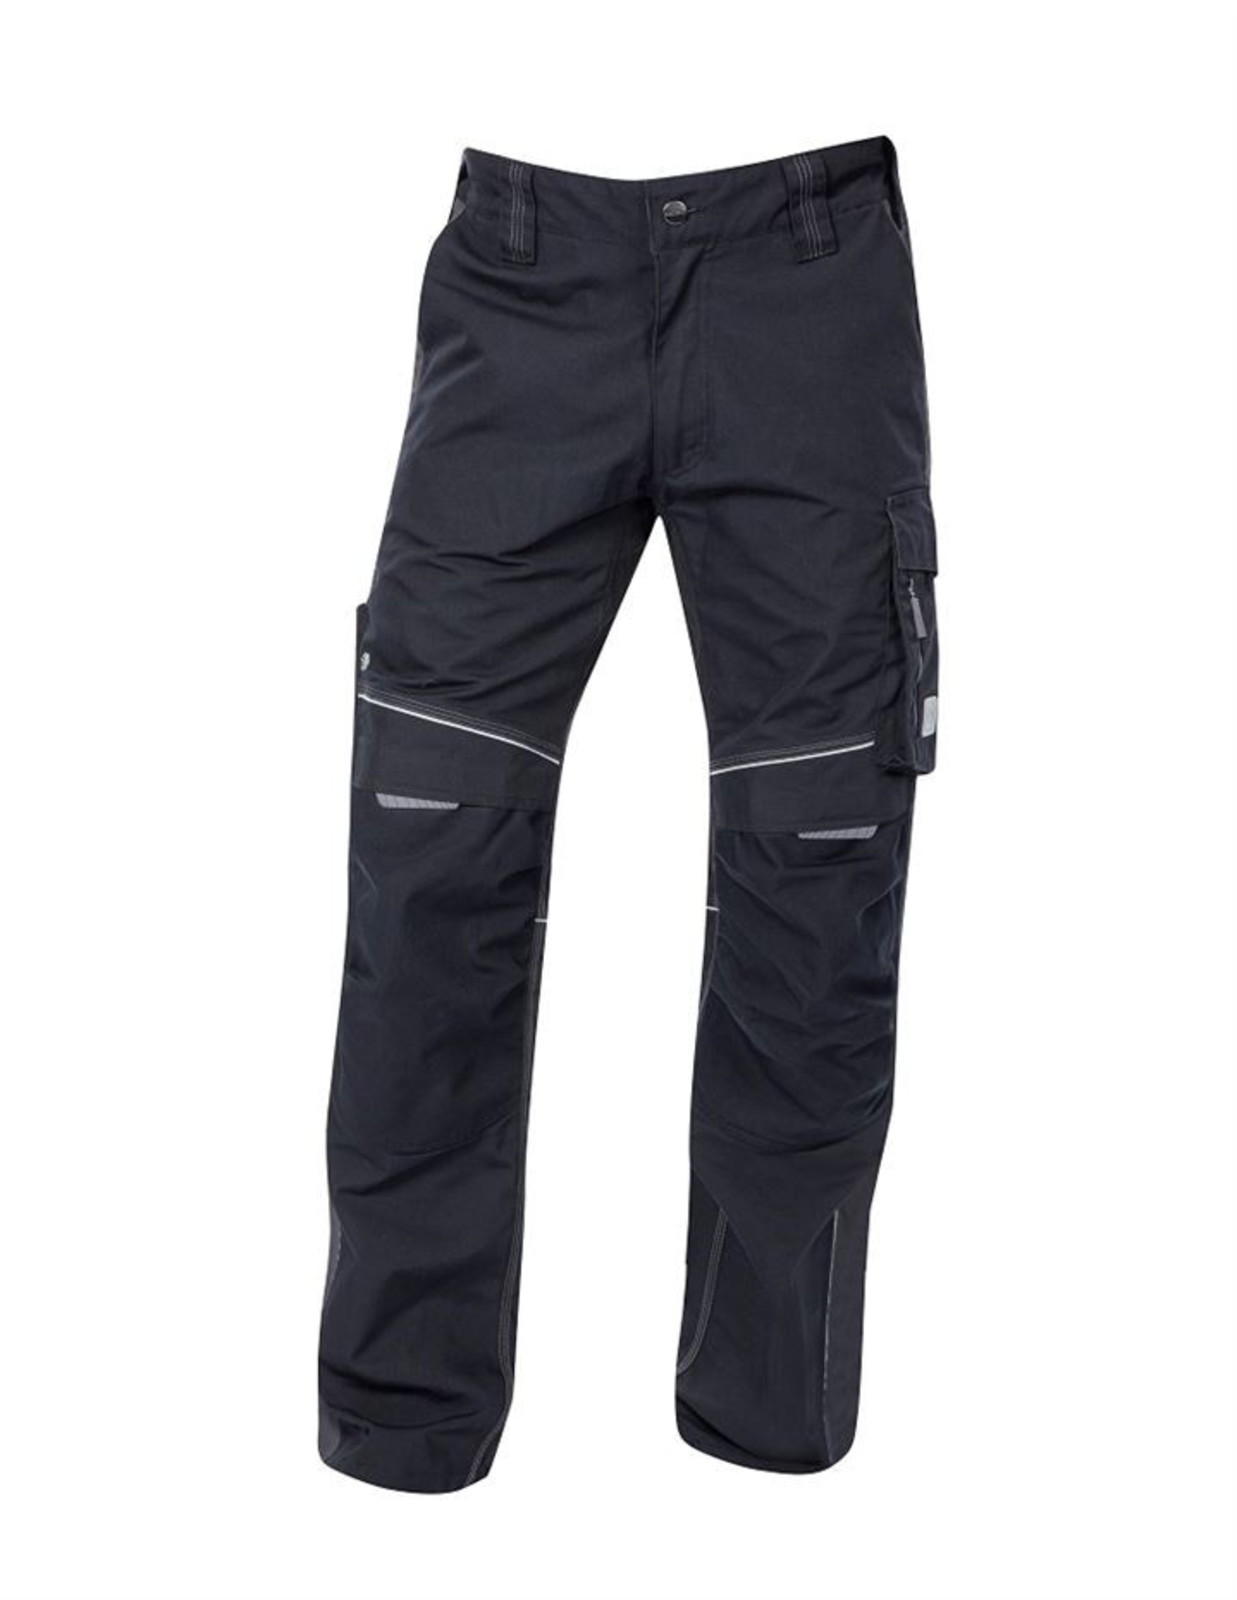 Pánske montérkové nohavice Ardon Urban+ - veľkosť: 60, farba: čierna/sivá